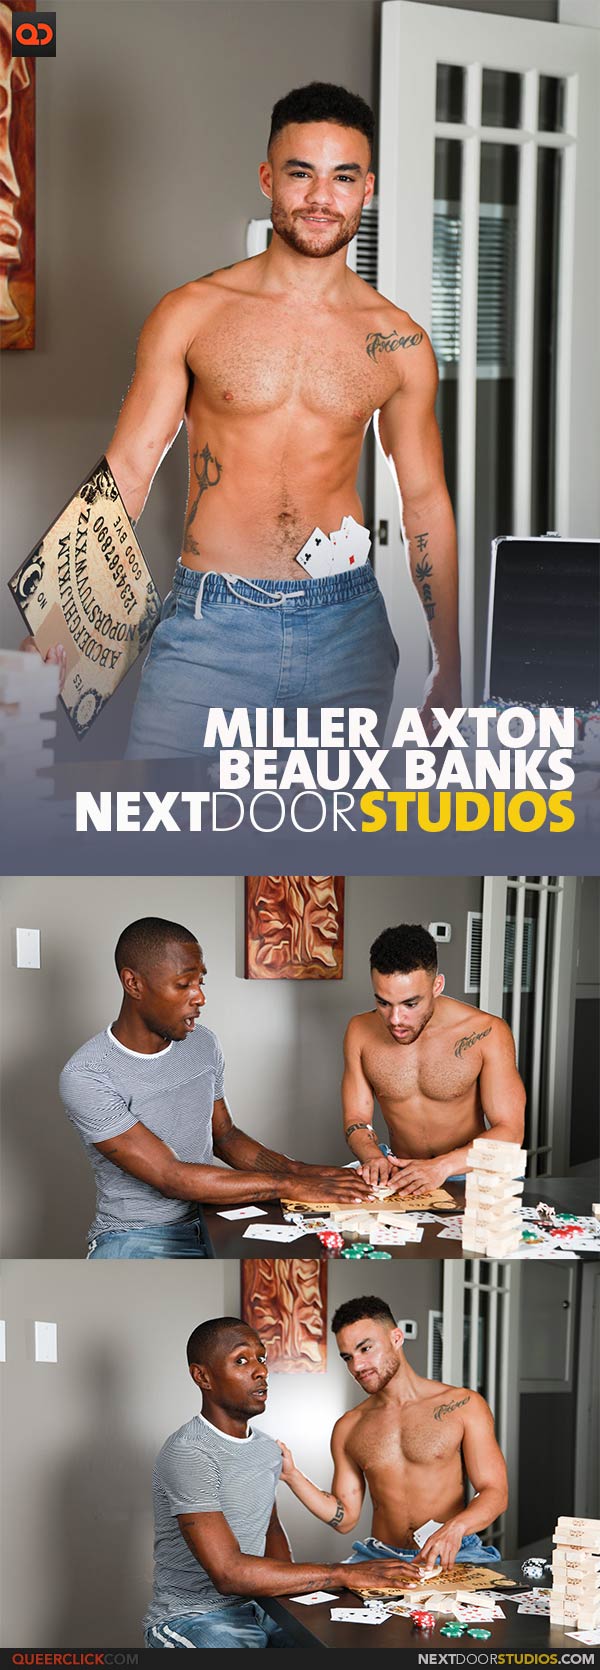 NextDoorStudios: Beaux Banks and Miller Axton